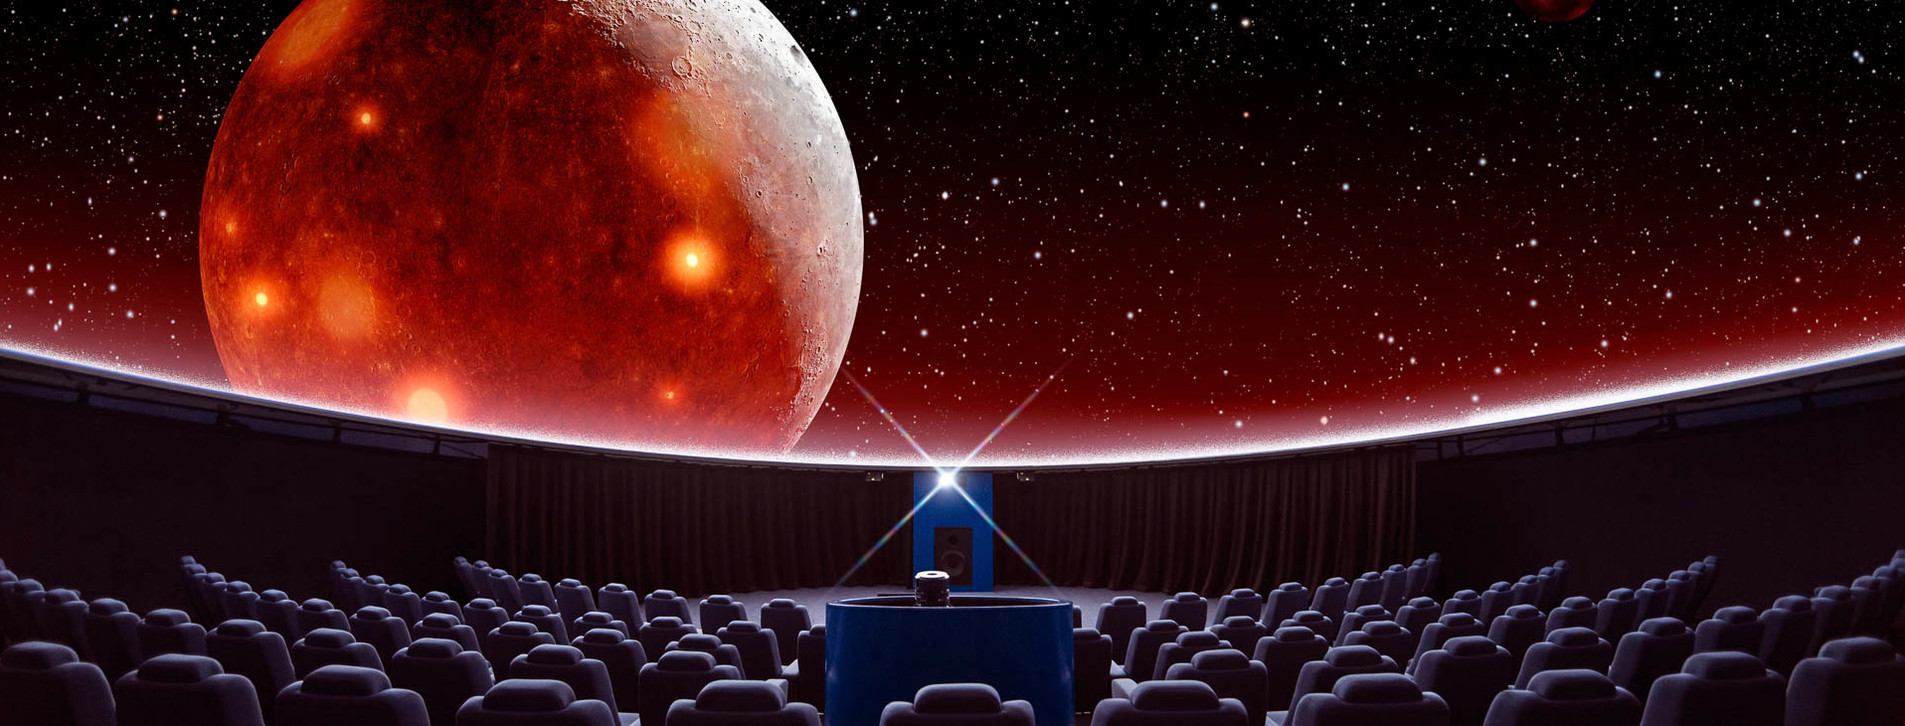 Фото 1 - Сферический кинотеатр для компании